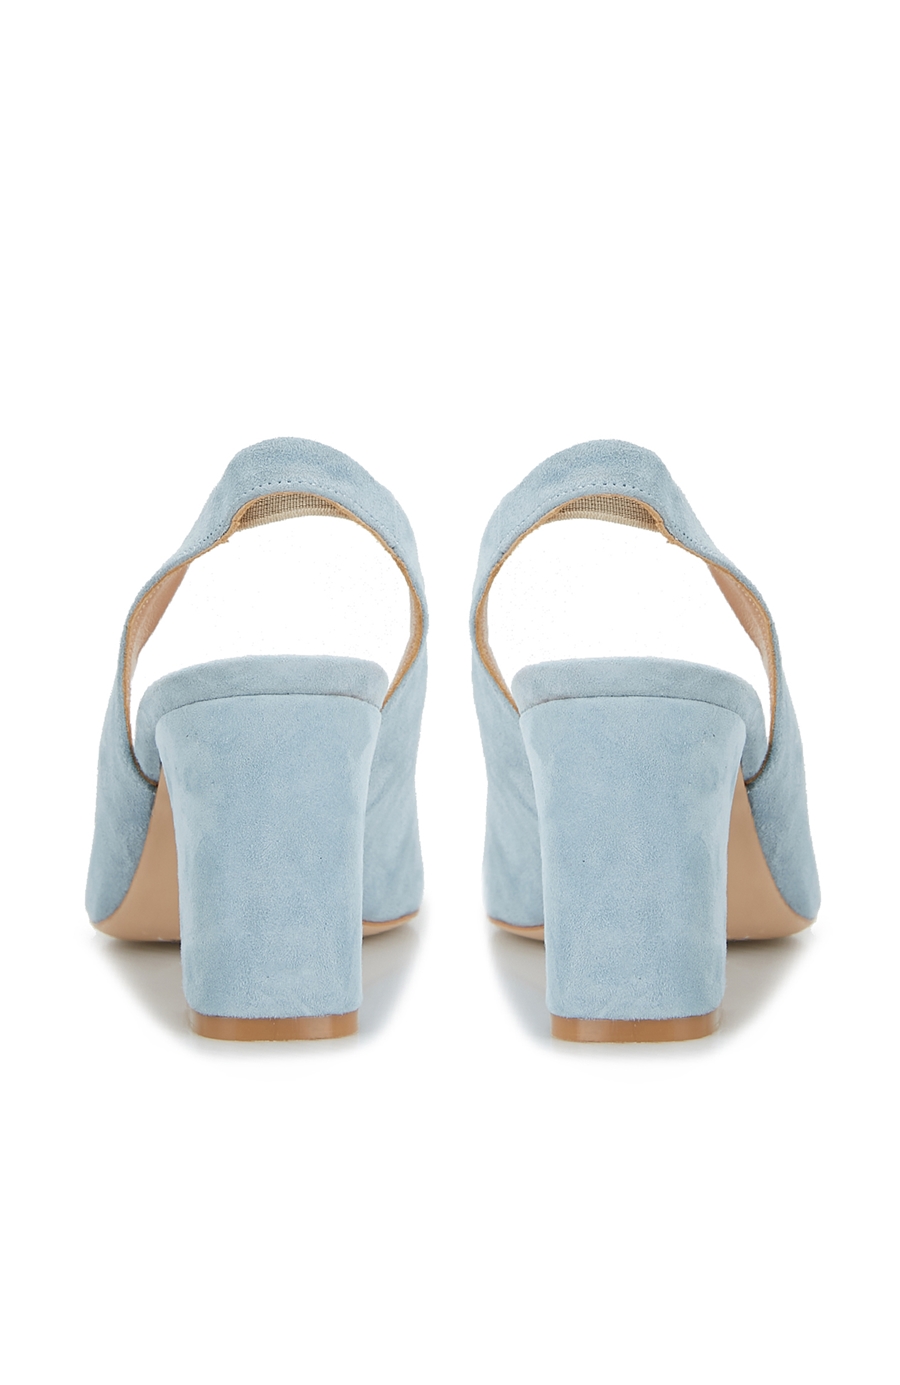 Kadın Mavi Topuklu Ayakkabı